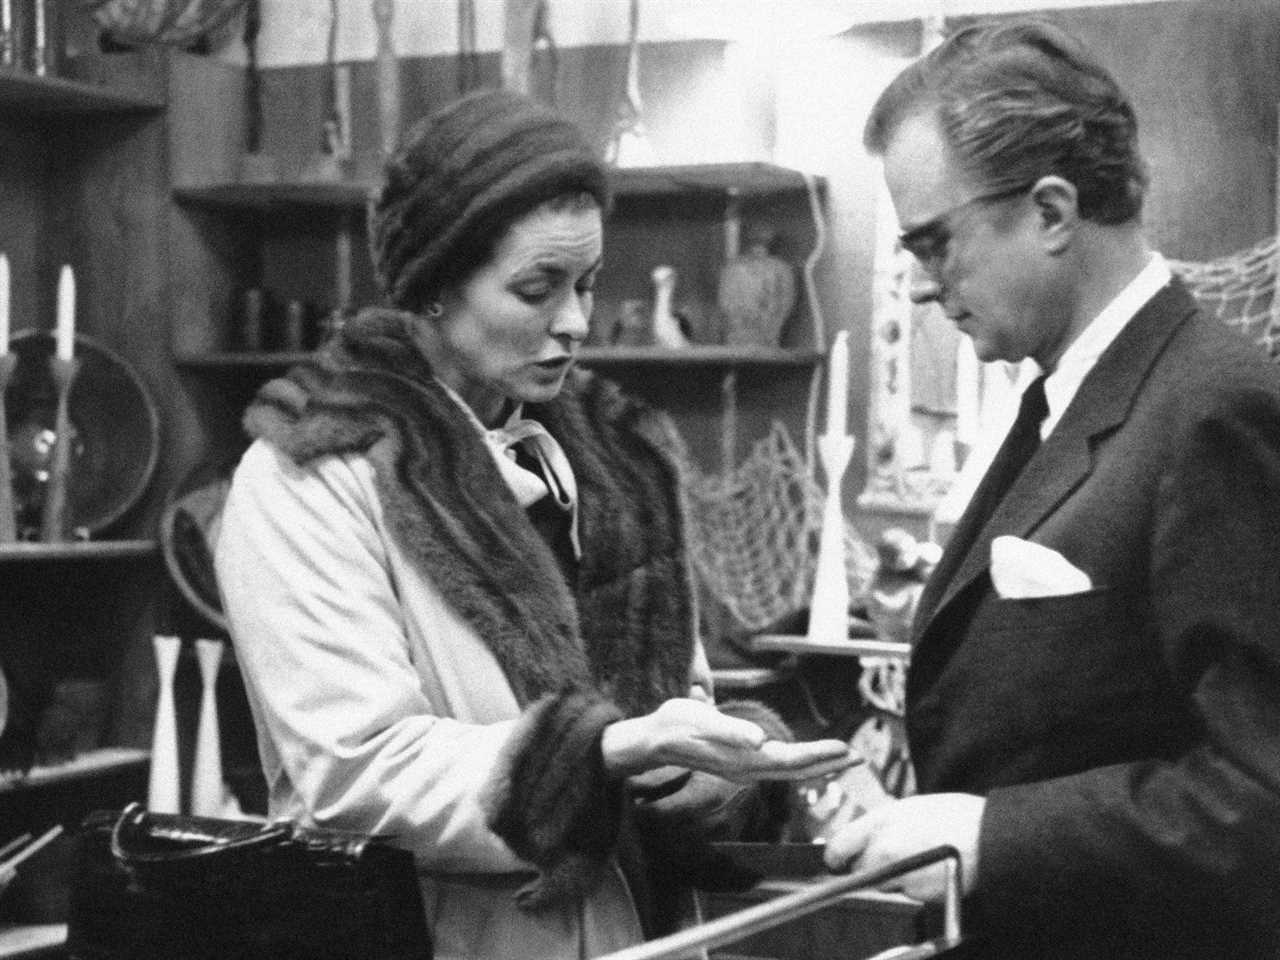 Ingrid Bergman and her husband, Lars Schmidt, in an airport gift shop in 1959